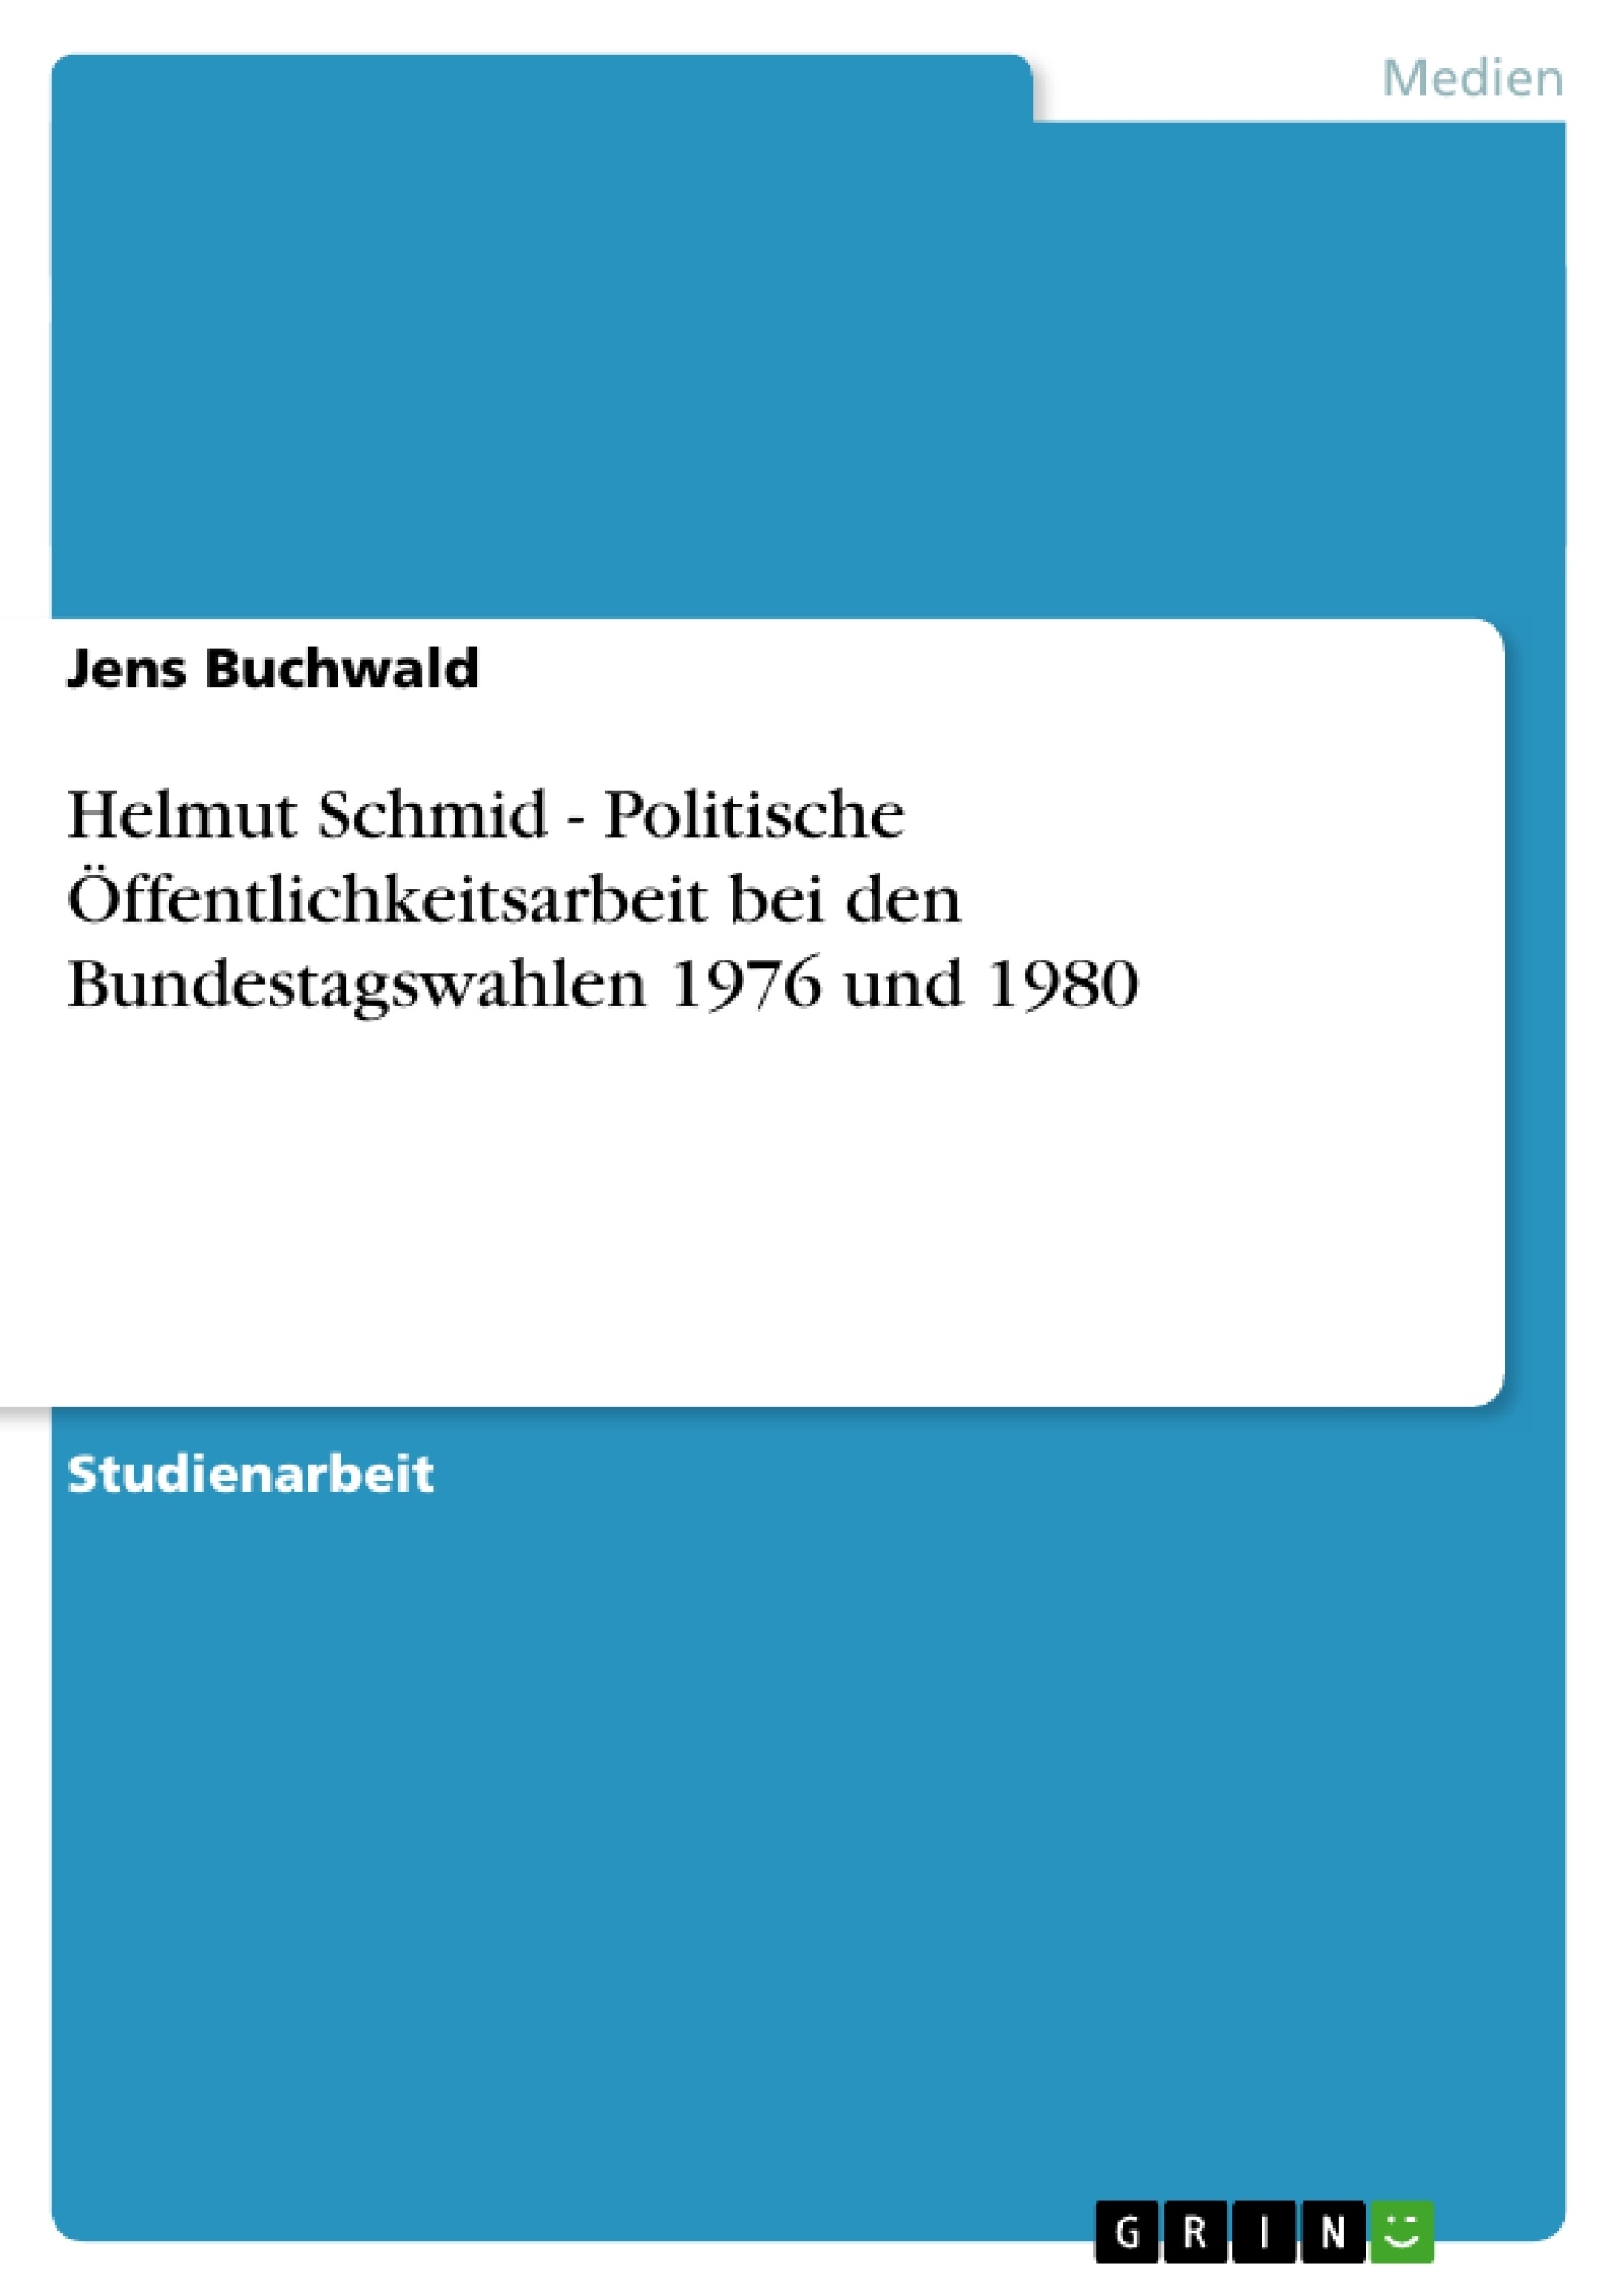 Title: Helmut Schmid - Politische Öffentlichkeitsarbeit bei den Bundestagswahlen 1976 und 1980